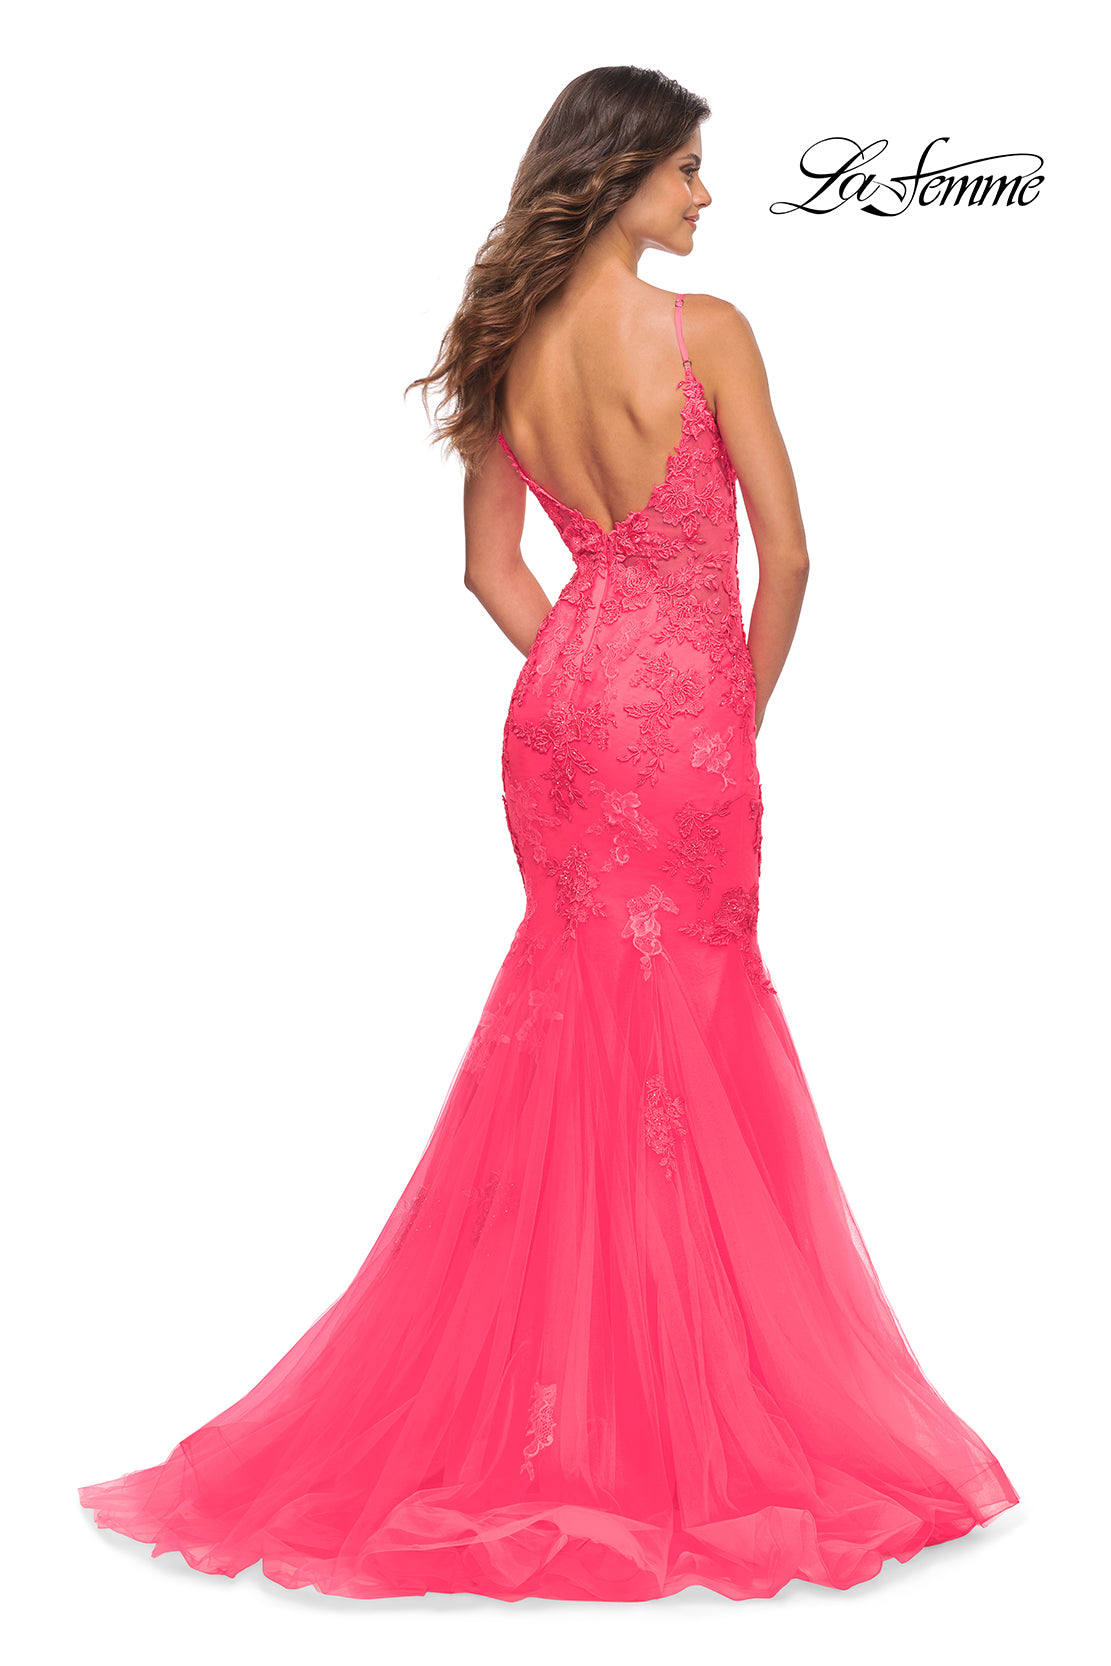 La Femme Neon Pink Long Mermaid Prom Dress